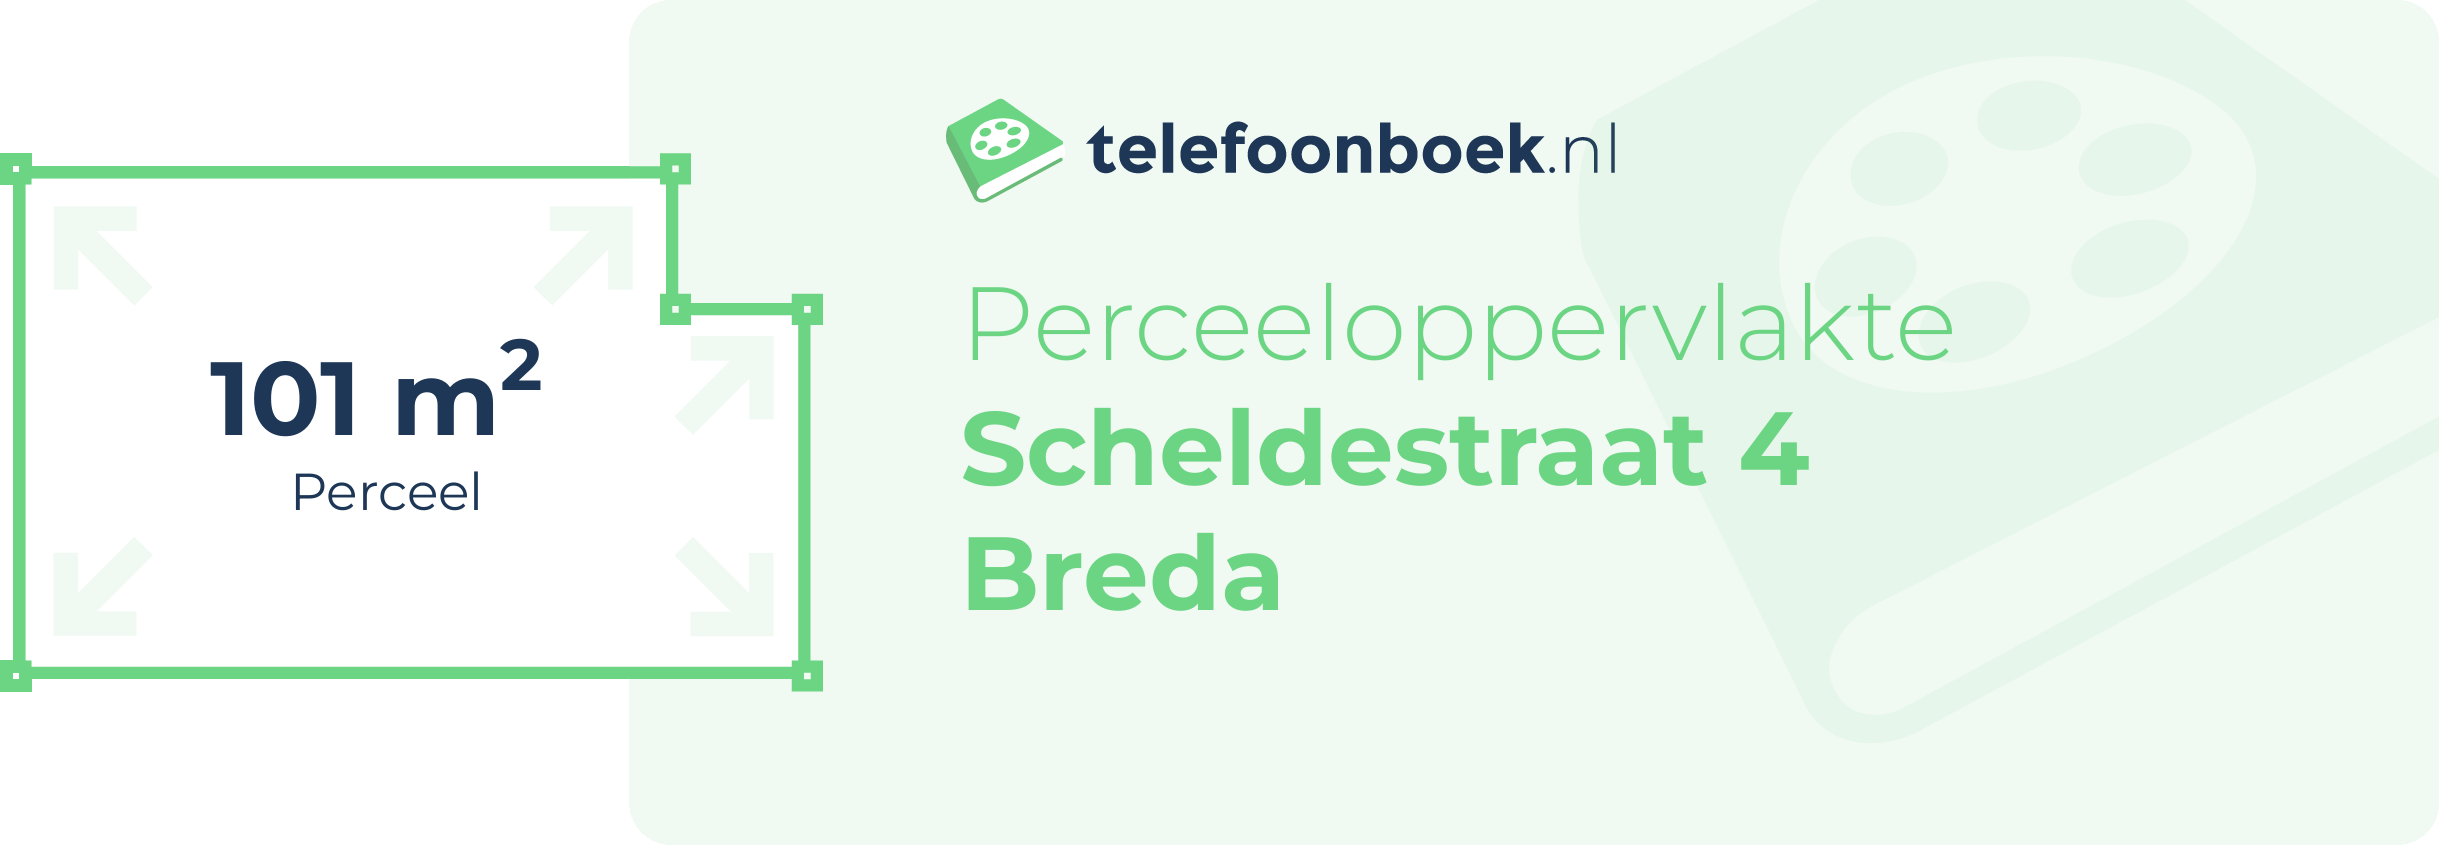 Perceeloppervlakte Scheldestraat 4 Breda